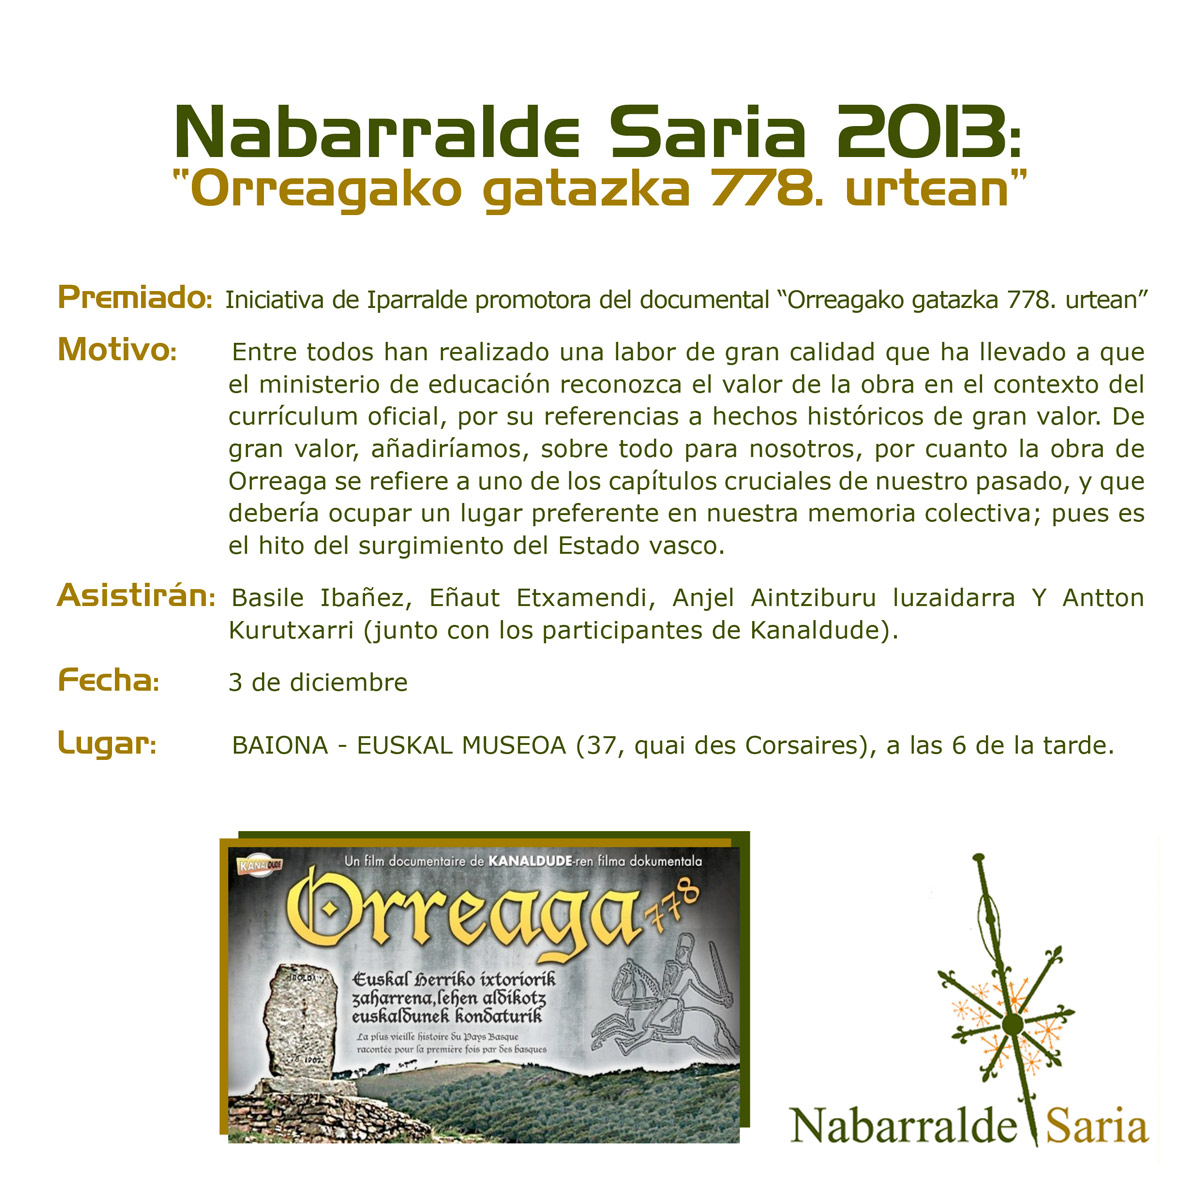 Nabarralde_saria_2013